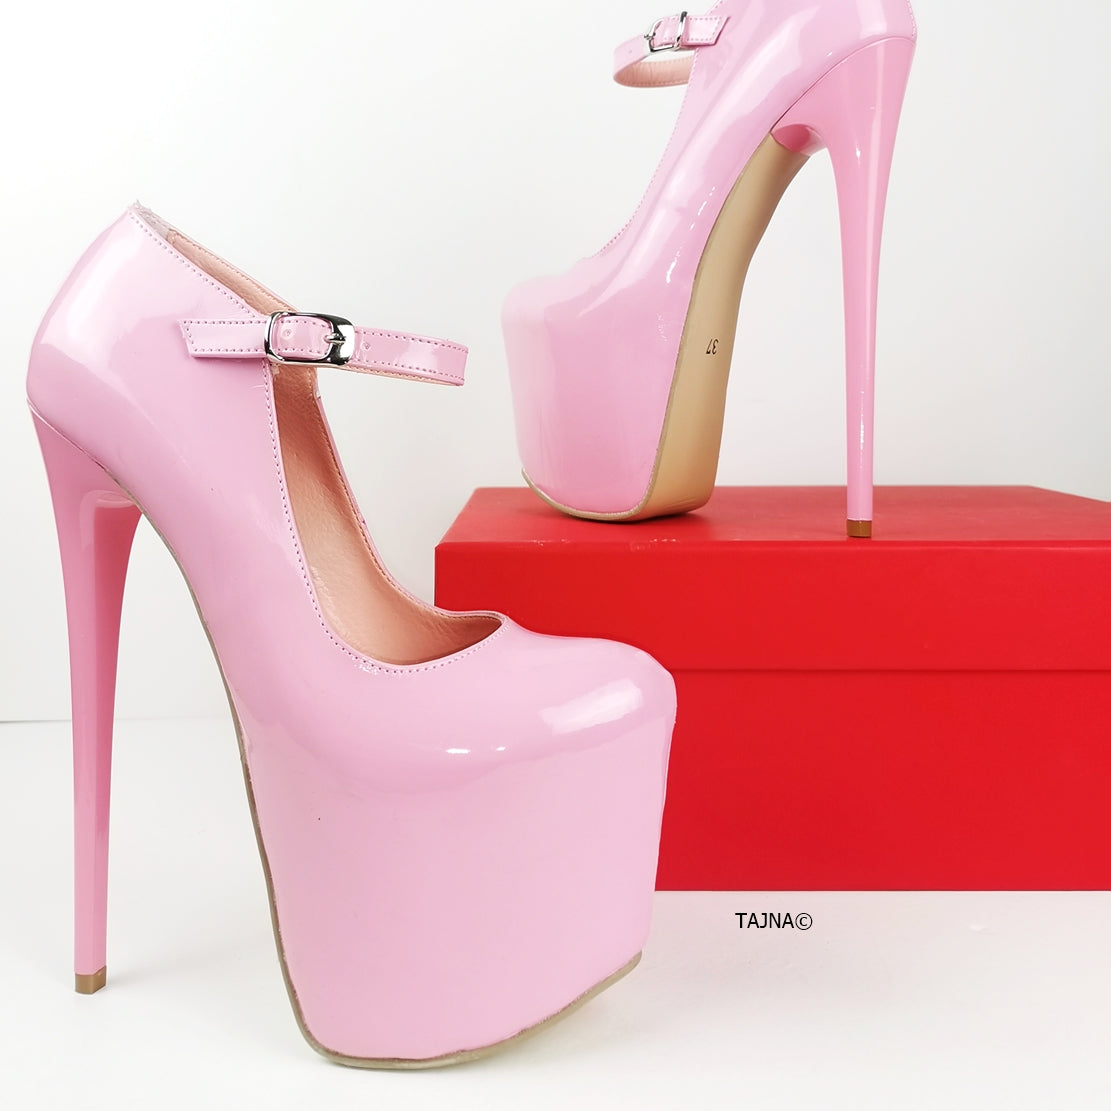 Light Pink Patent Mary Jane Heels | Tajna Club